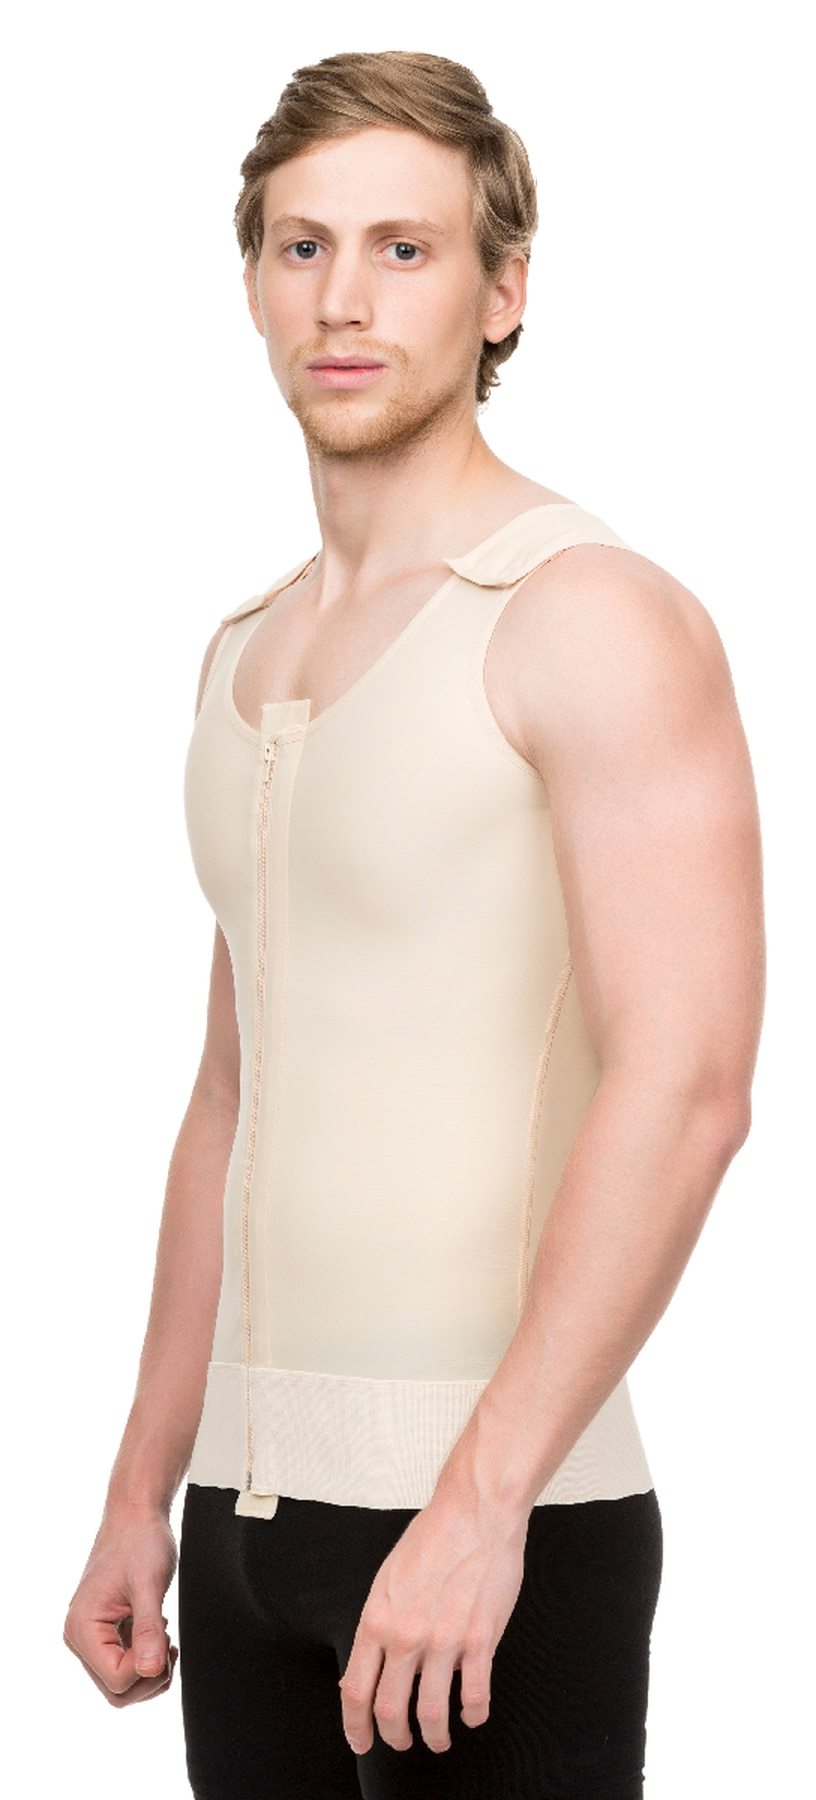 Camiseta de compresión con mangas largas y zipper para hombre postquir –  fajasisavela